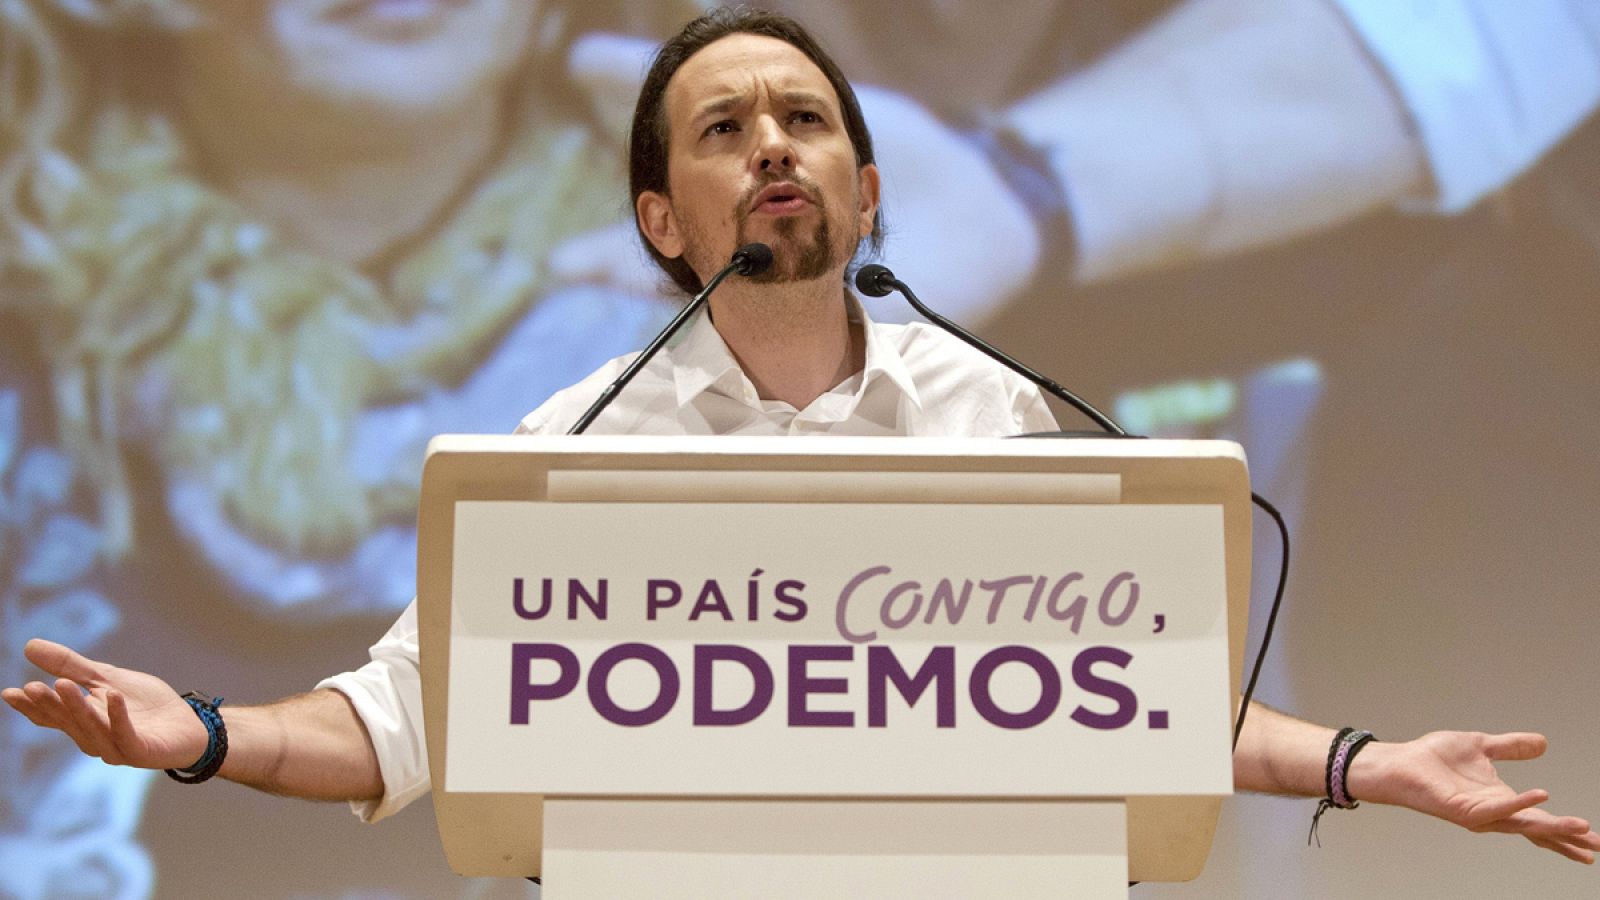 El líder de Podemos, Pablo Iglesias durante su intervención en un acto electoral de su partido celebrado este sábado en el Palacio de Congresos de Cádiz.